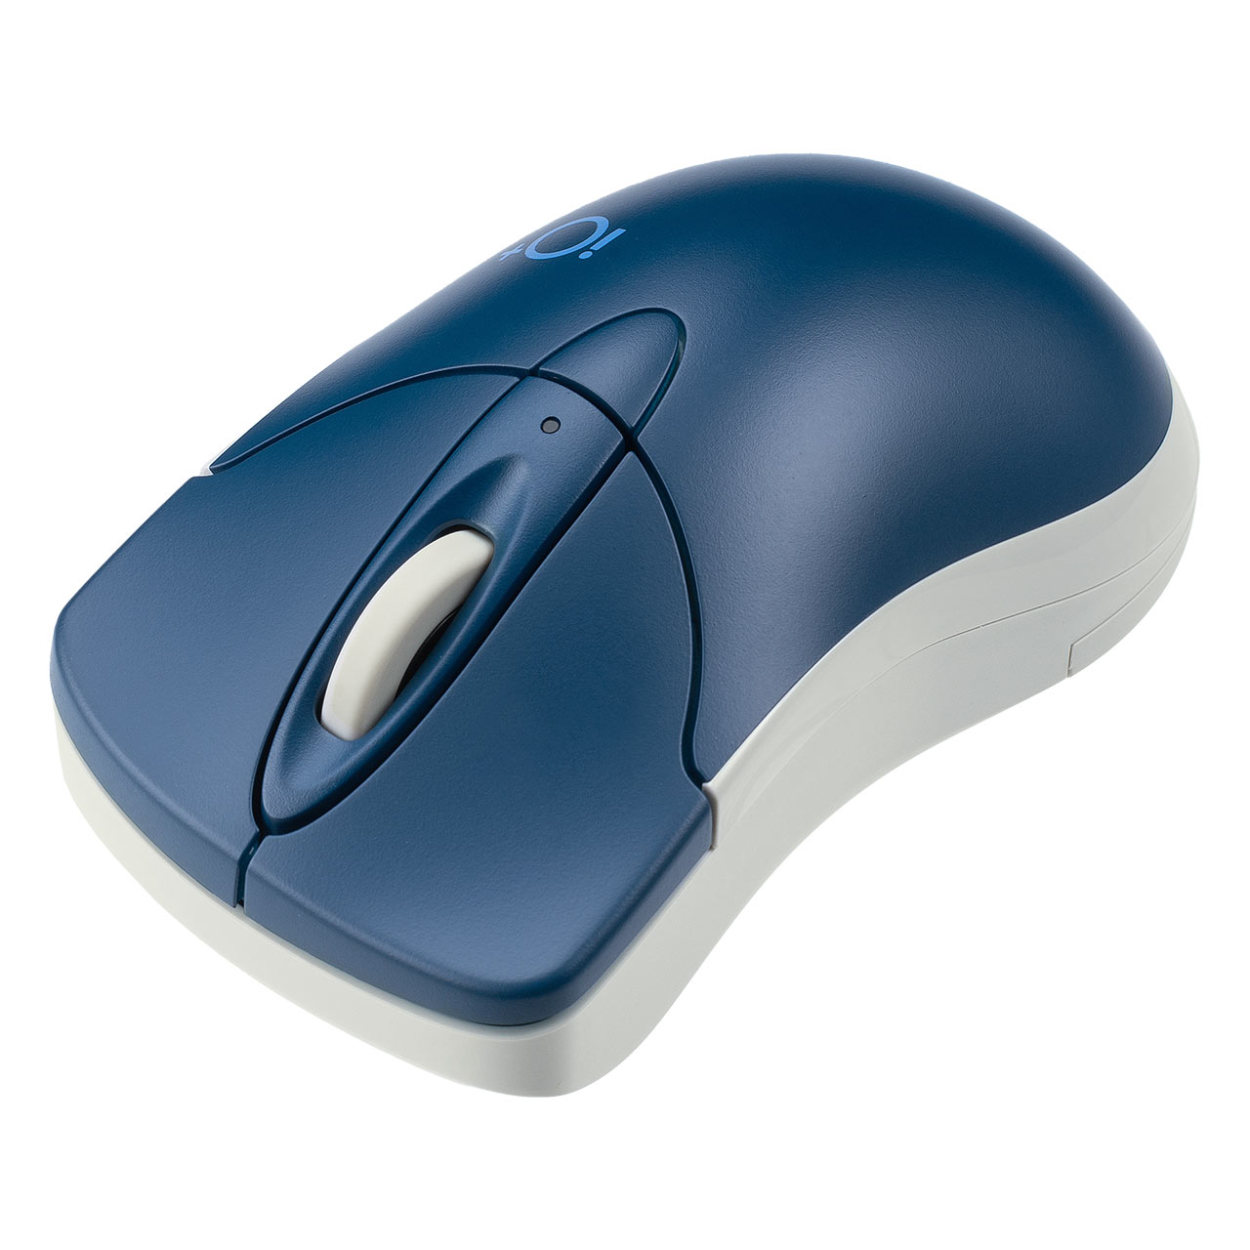 マウス Bluetooth ワイヤレス 無線 静音 マルチペアリング 小型 コンパクト カウント切り替え かわいい おしゃれ 400-MABTIP3